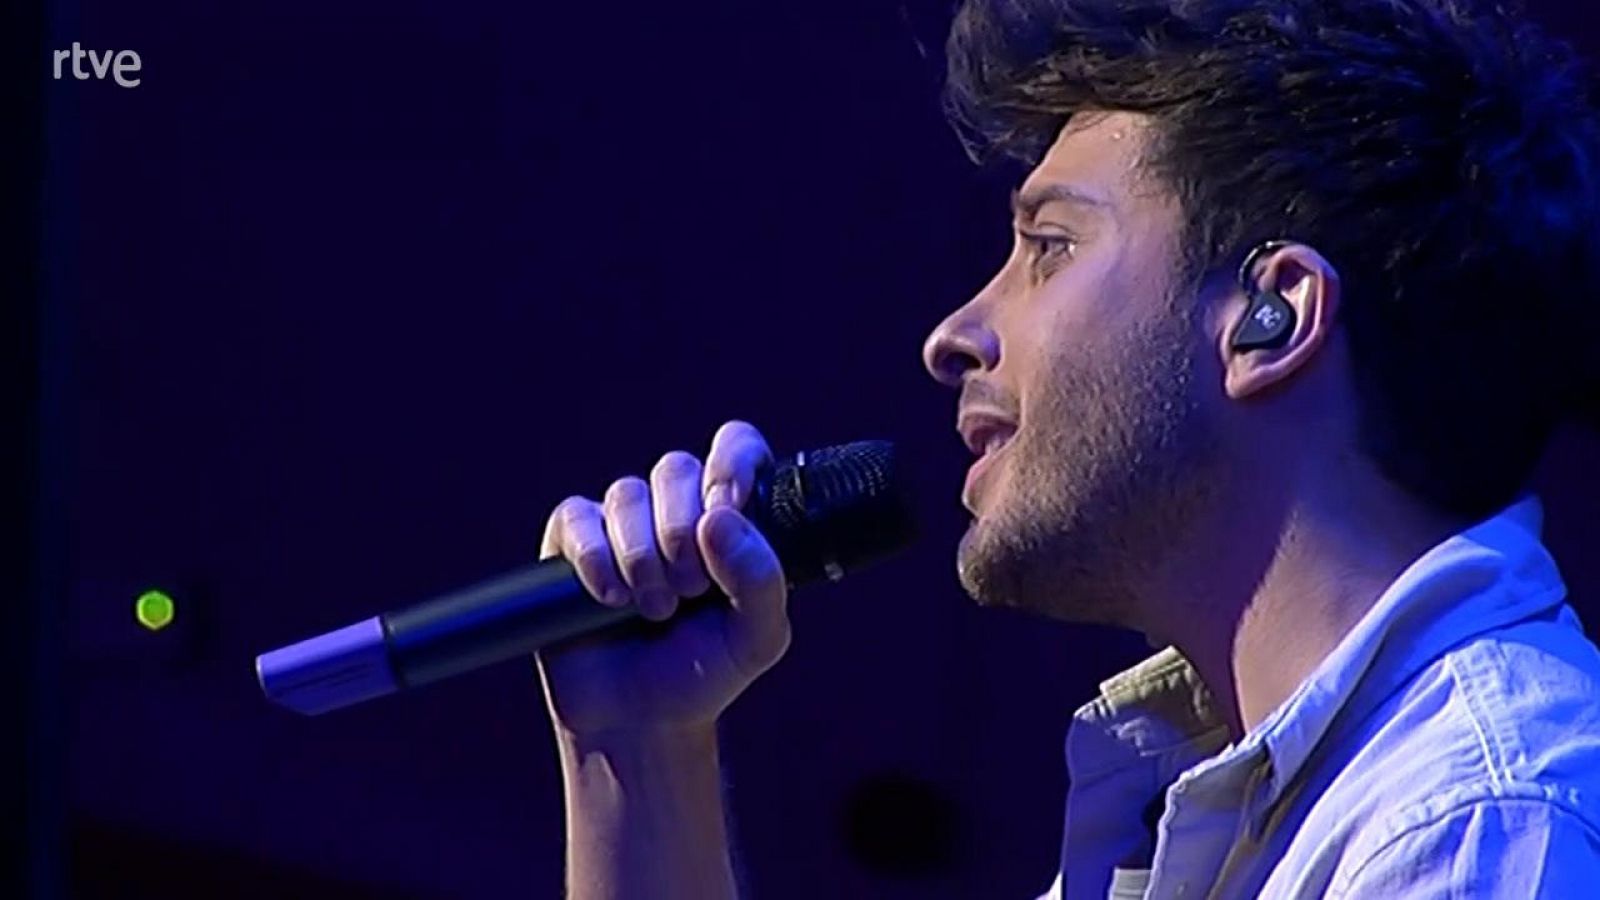 Eurovisión 2021 - Blas Cantó interpreta "I'll stay" al piano  